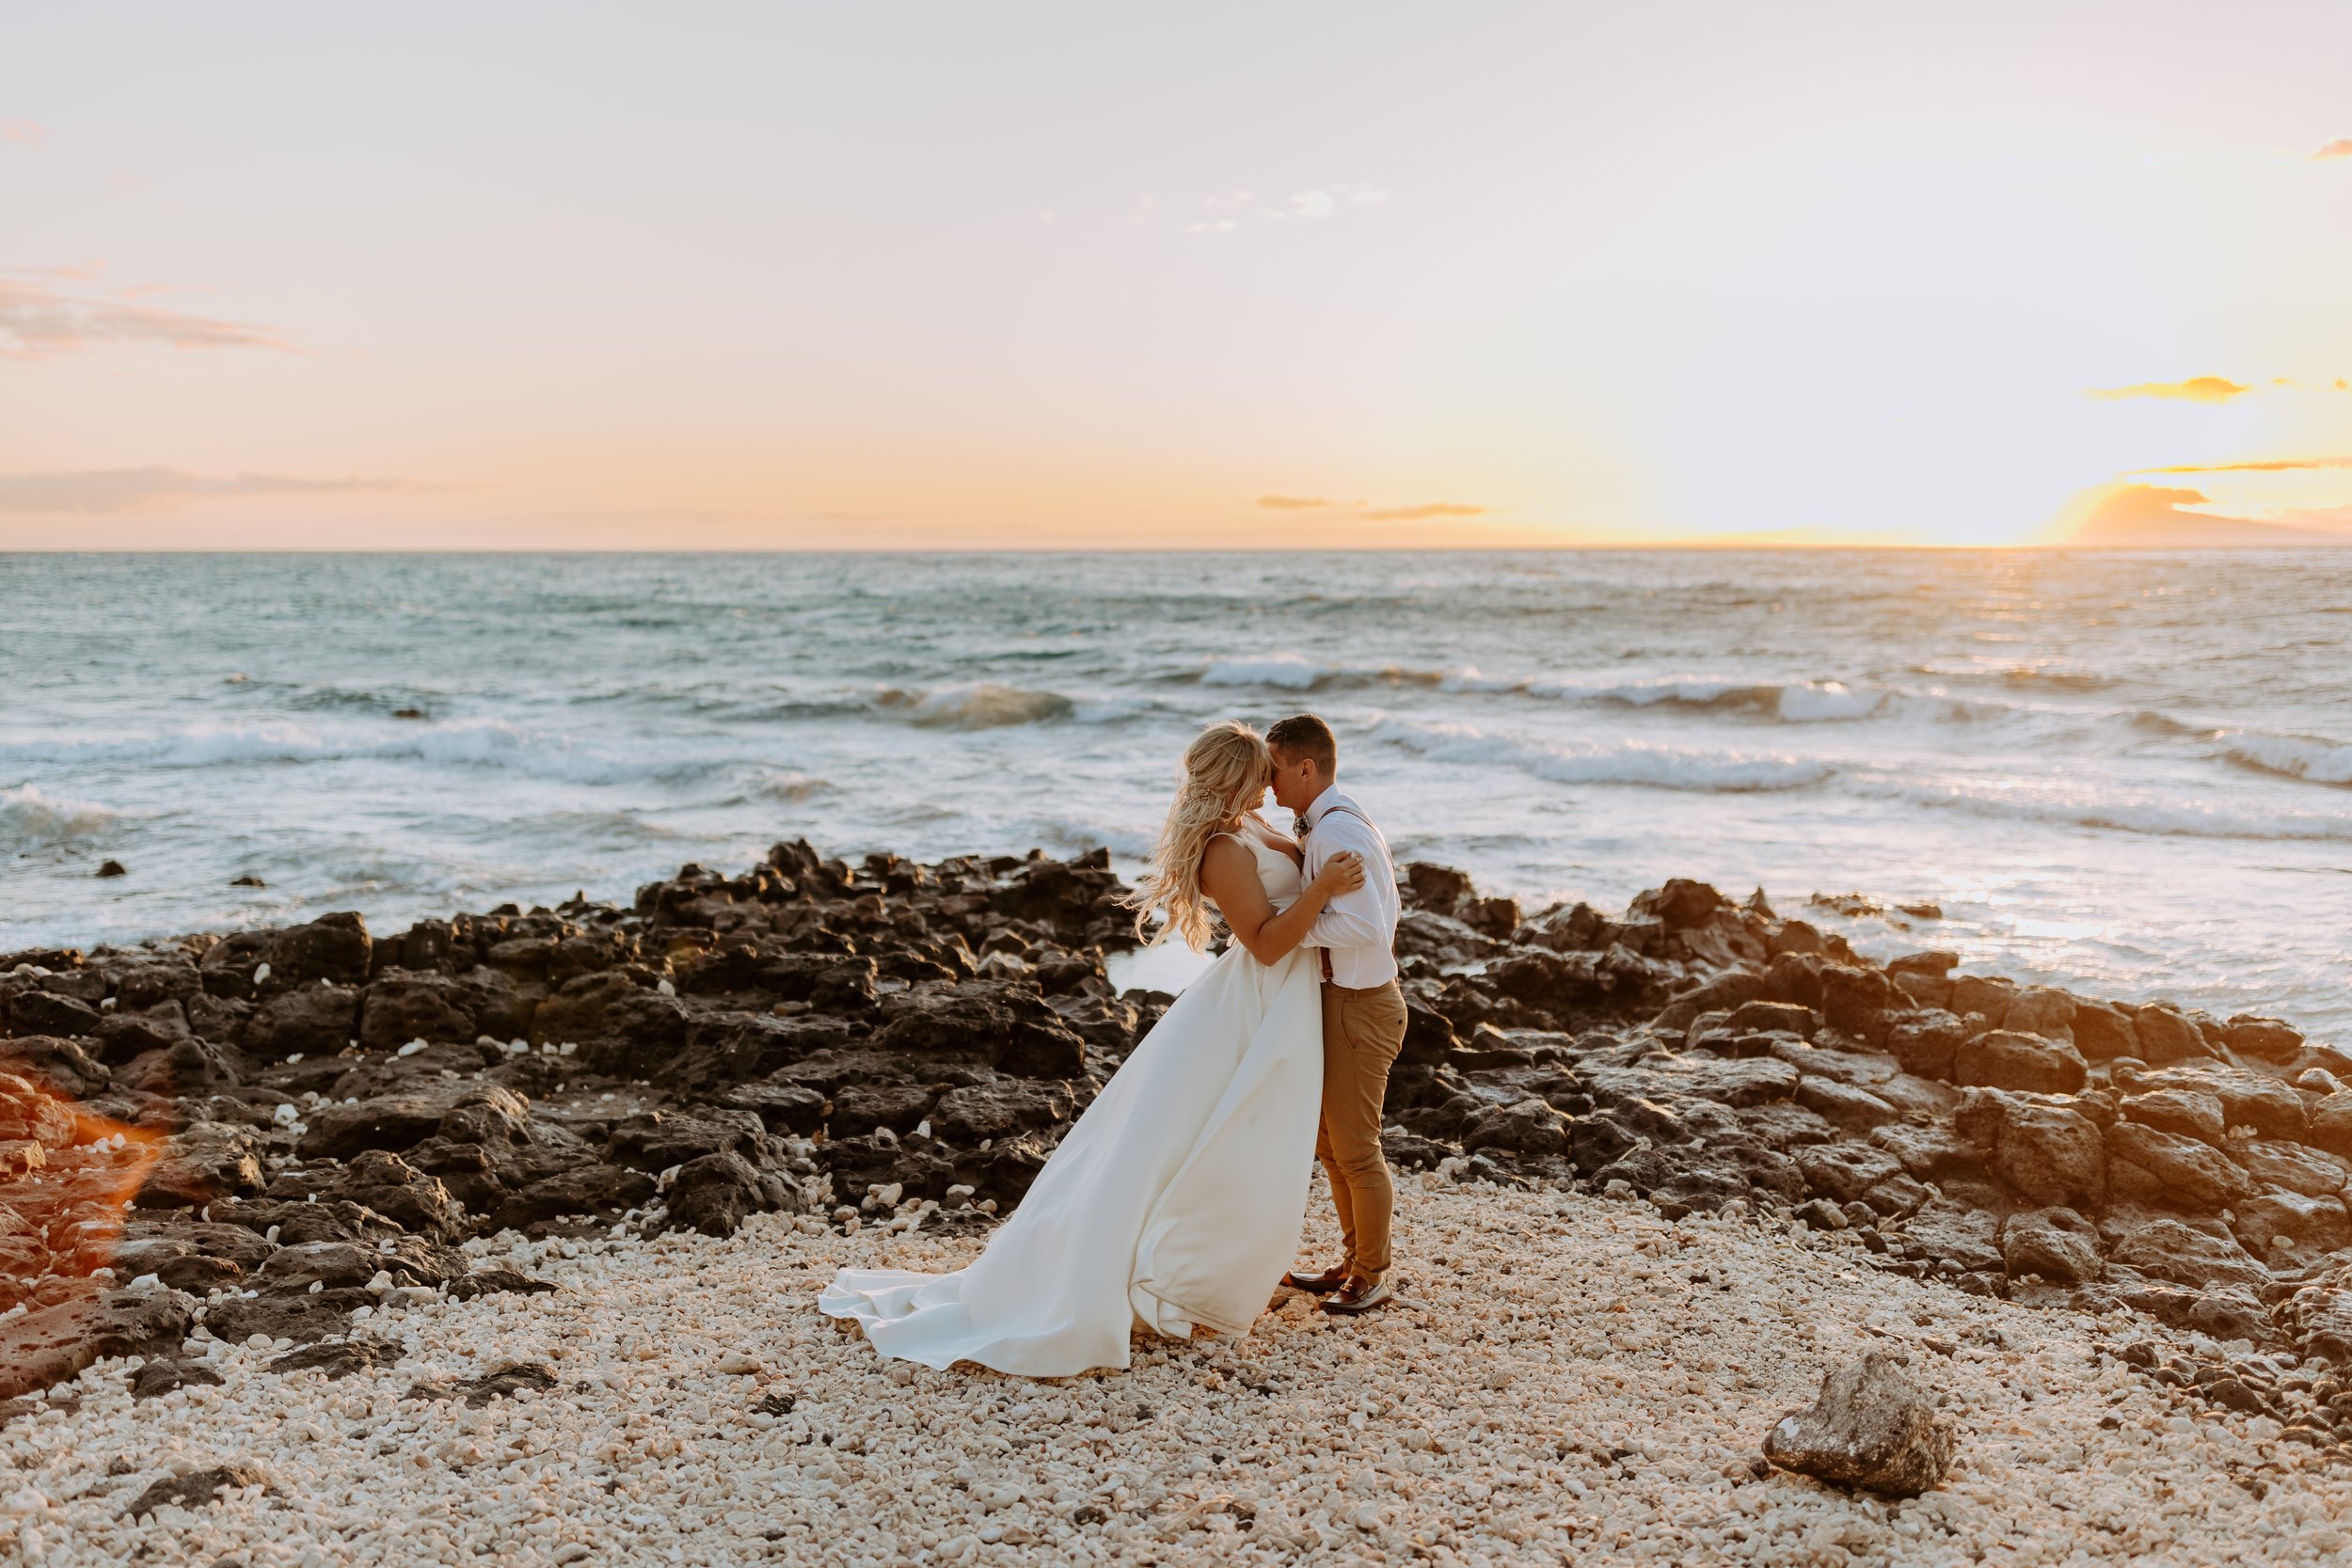 Makaili + Mac Lakin | Grand Wailea Maui Wedding - Hawaii Photographer515.jpg